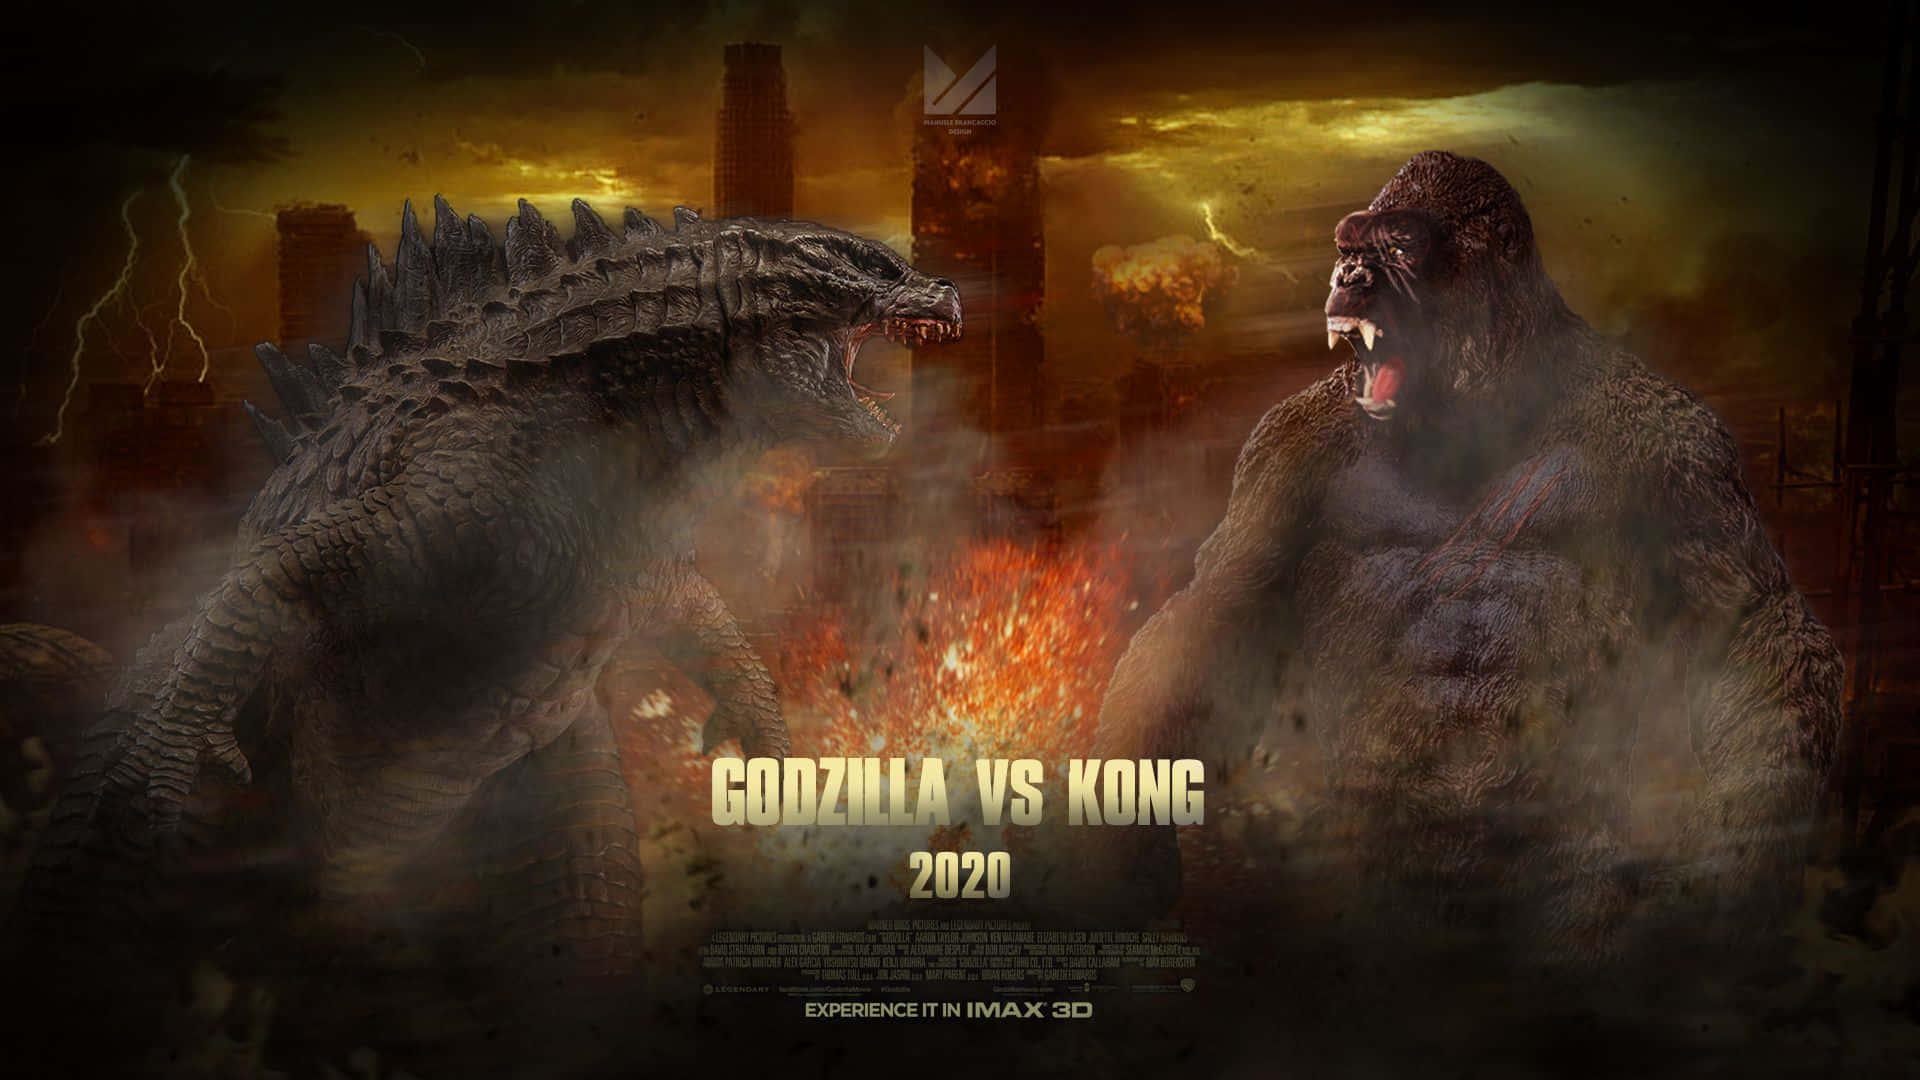 Godzillavs Kong 1920 X 1080 Baggrund.